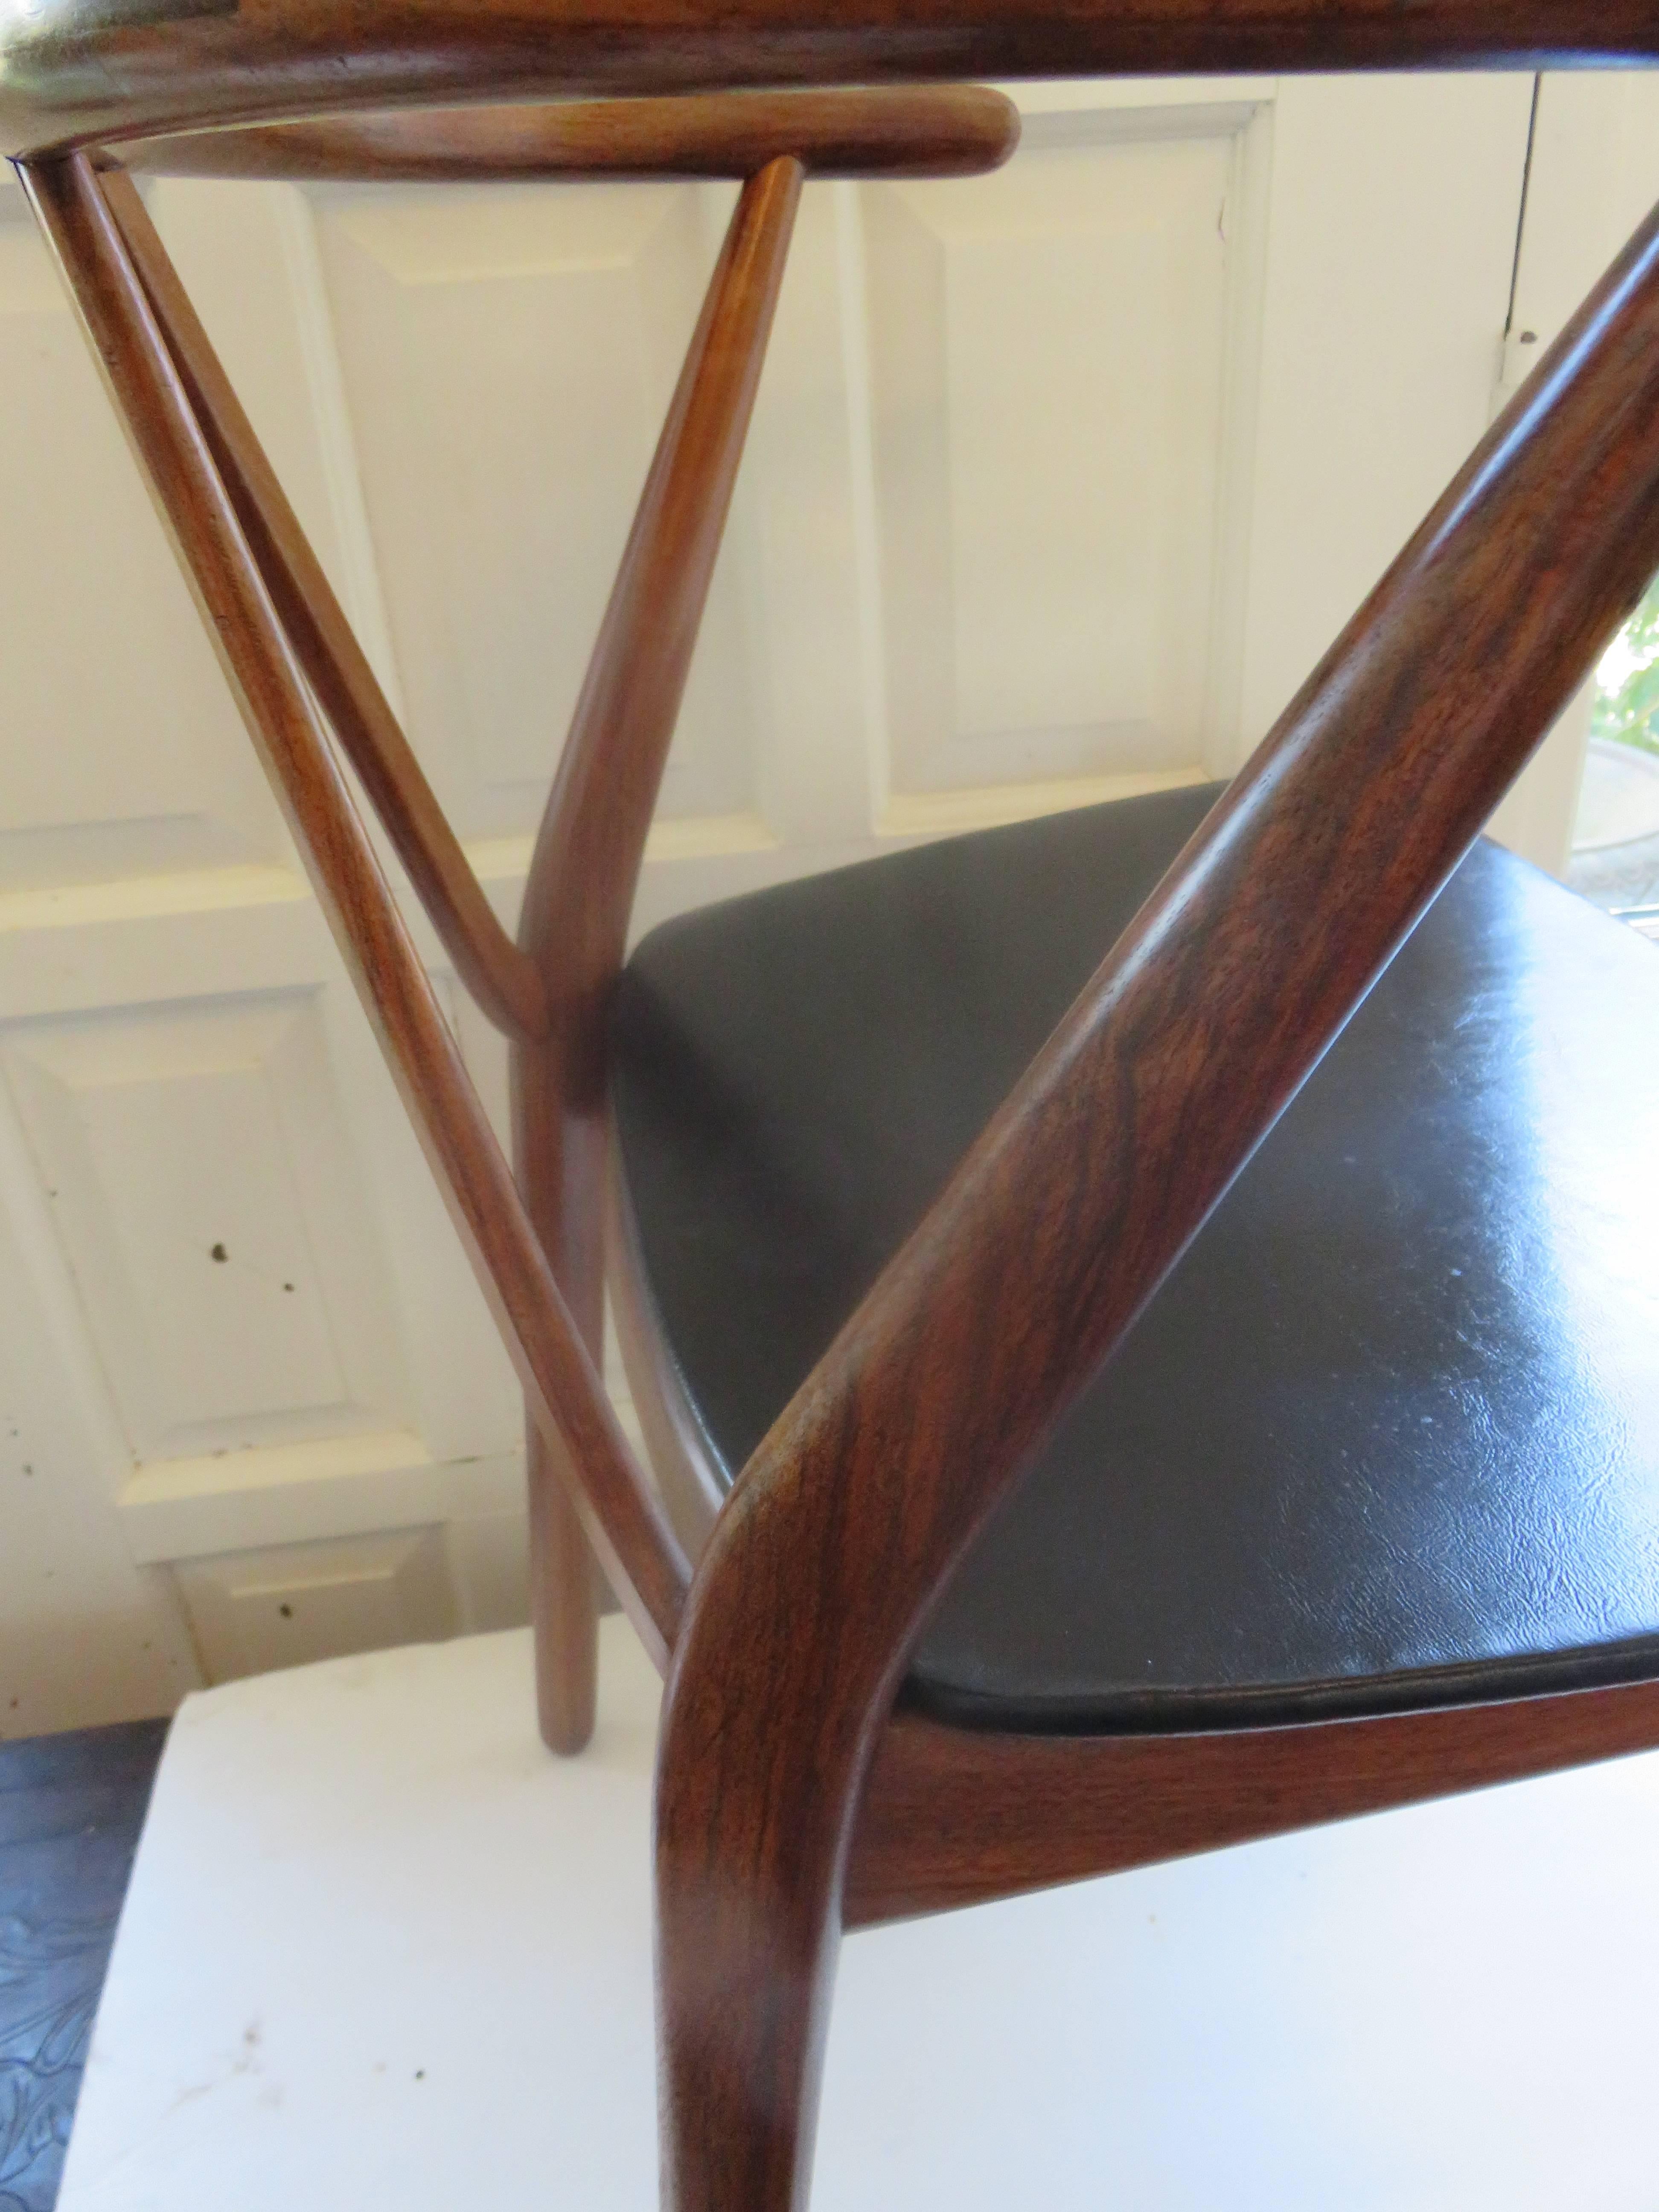 Hand-Crafted Mid-Century Danish Modern Chair by Henning Kjdaernulf for Bruno Hansen